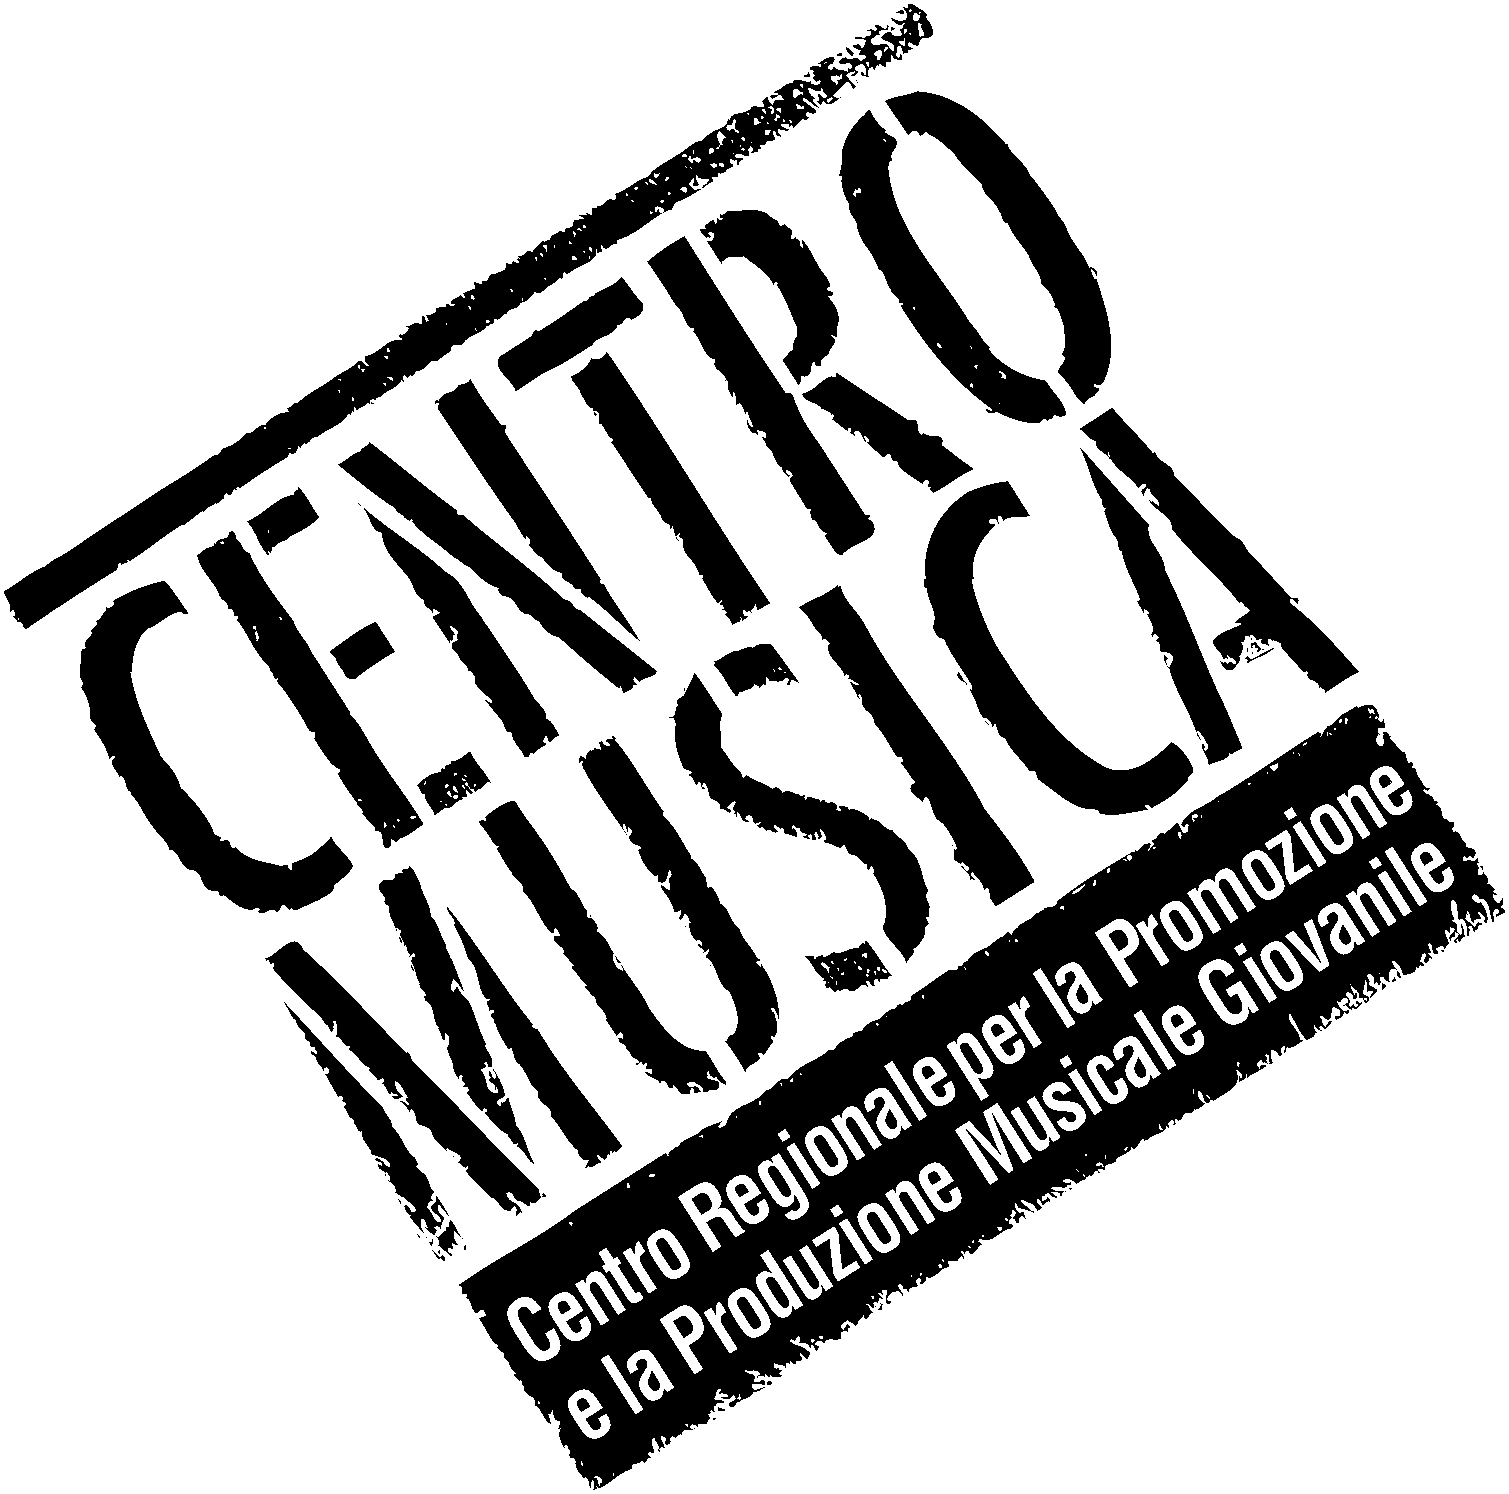 Musicplus - Centromusica